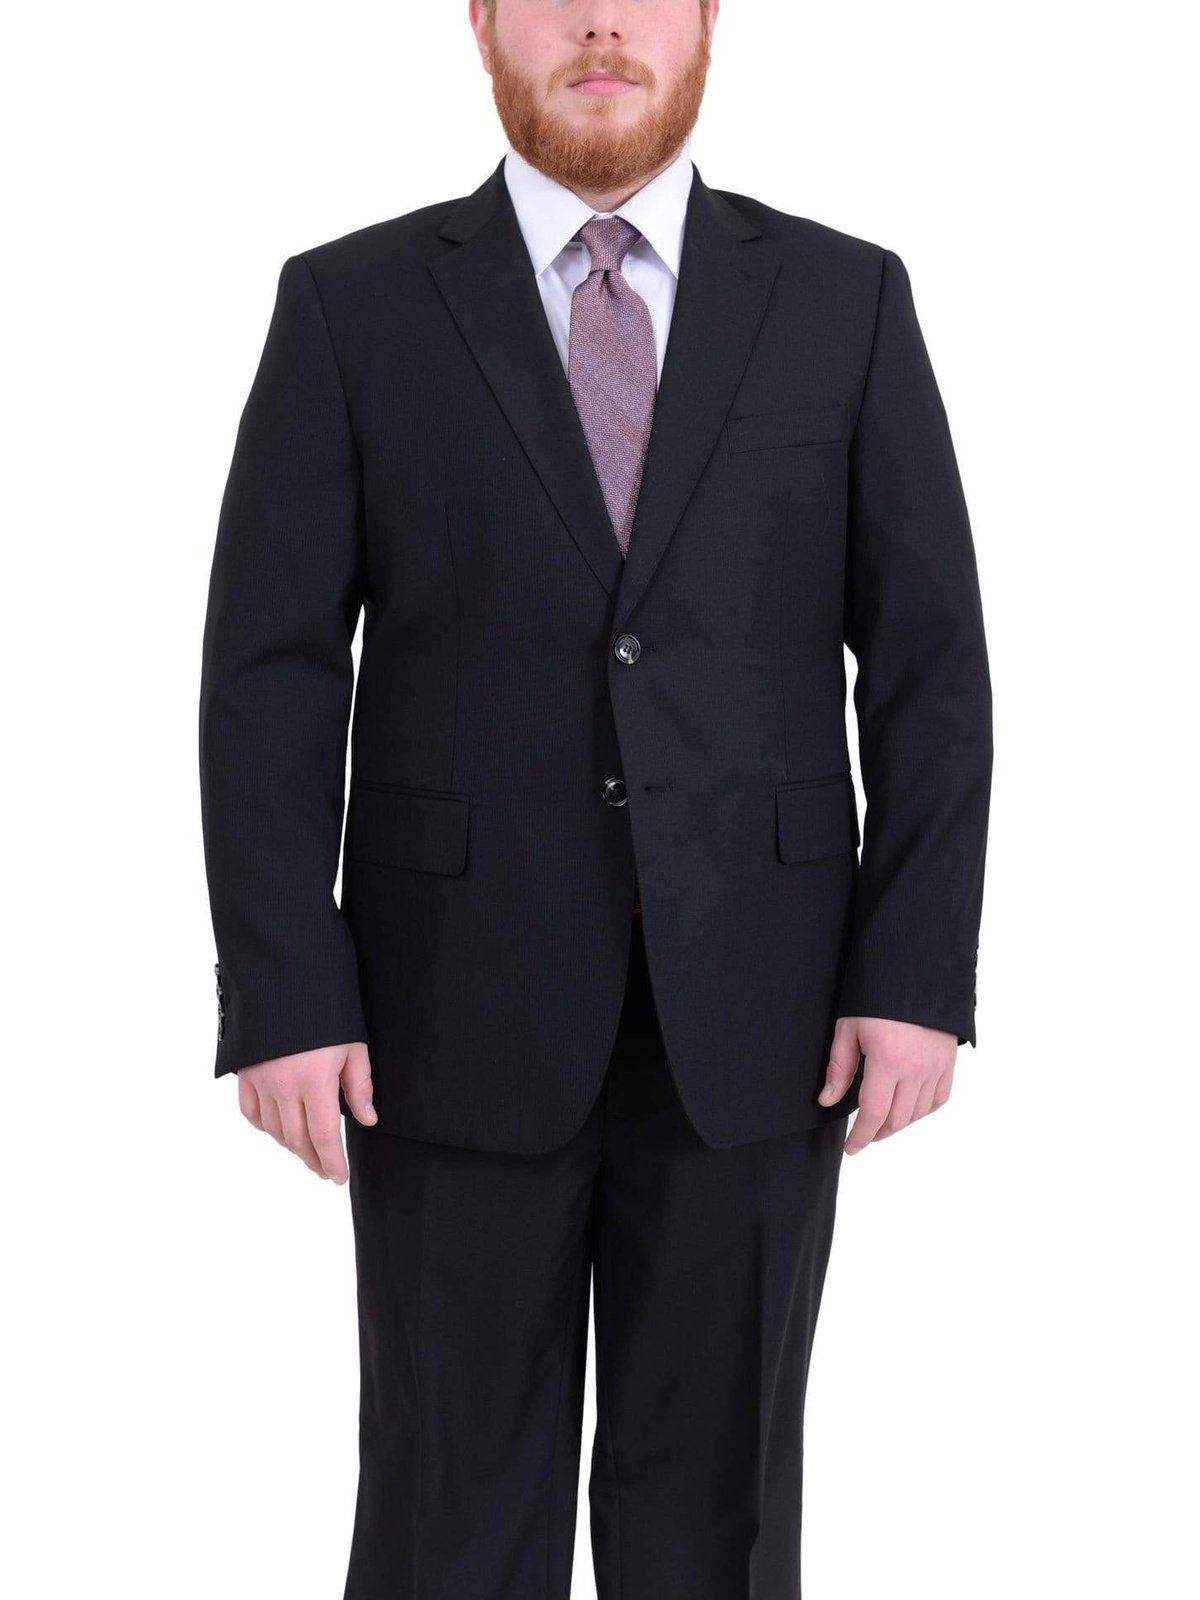 Arthur Black TWO PIECE SUITS Men's Arthur Black Executive Portly Fit Black Striped 2 Button 2 Piece Wool Suit